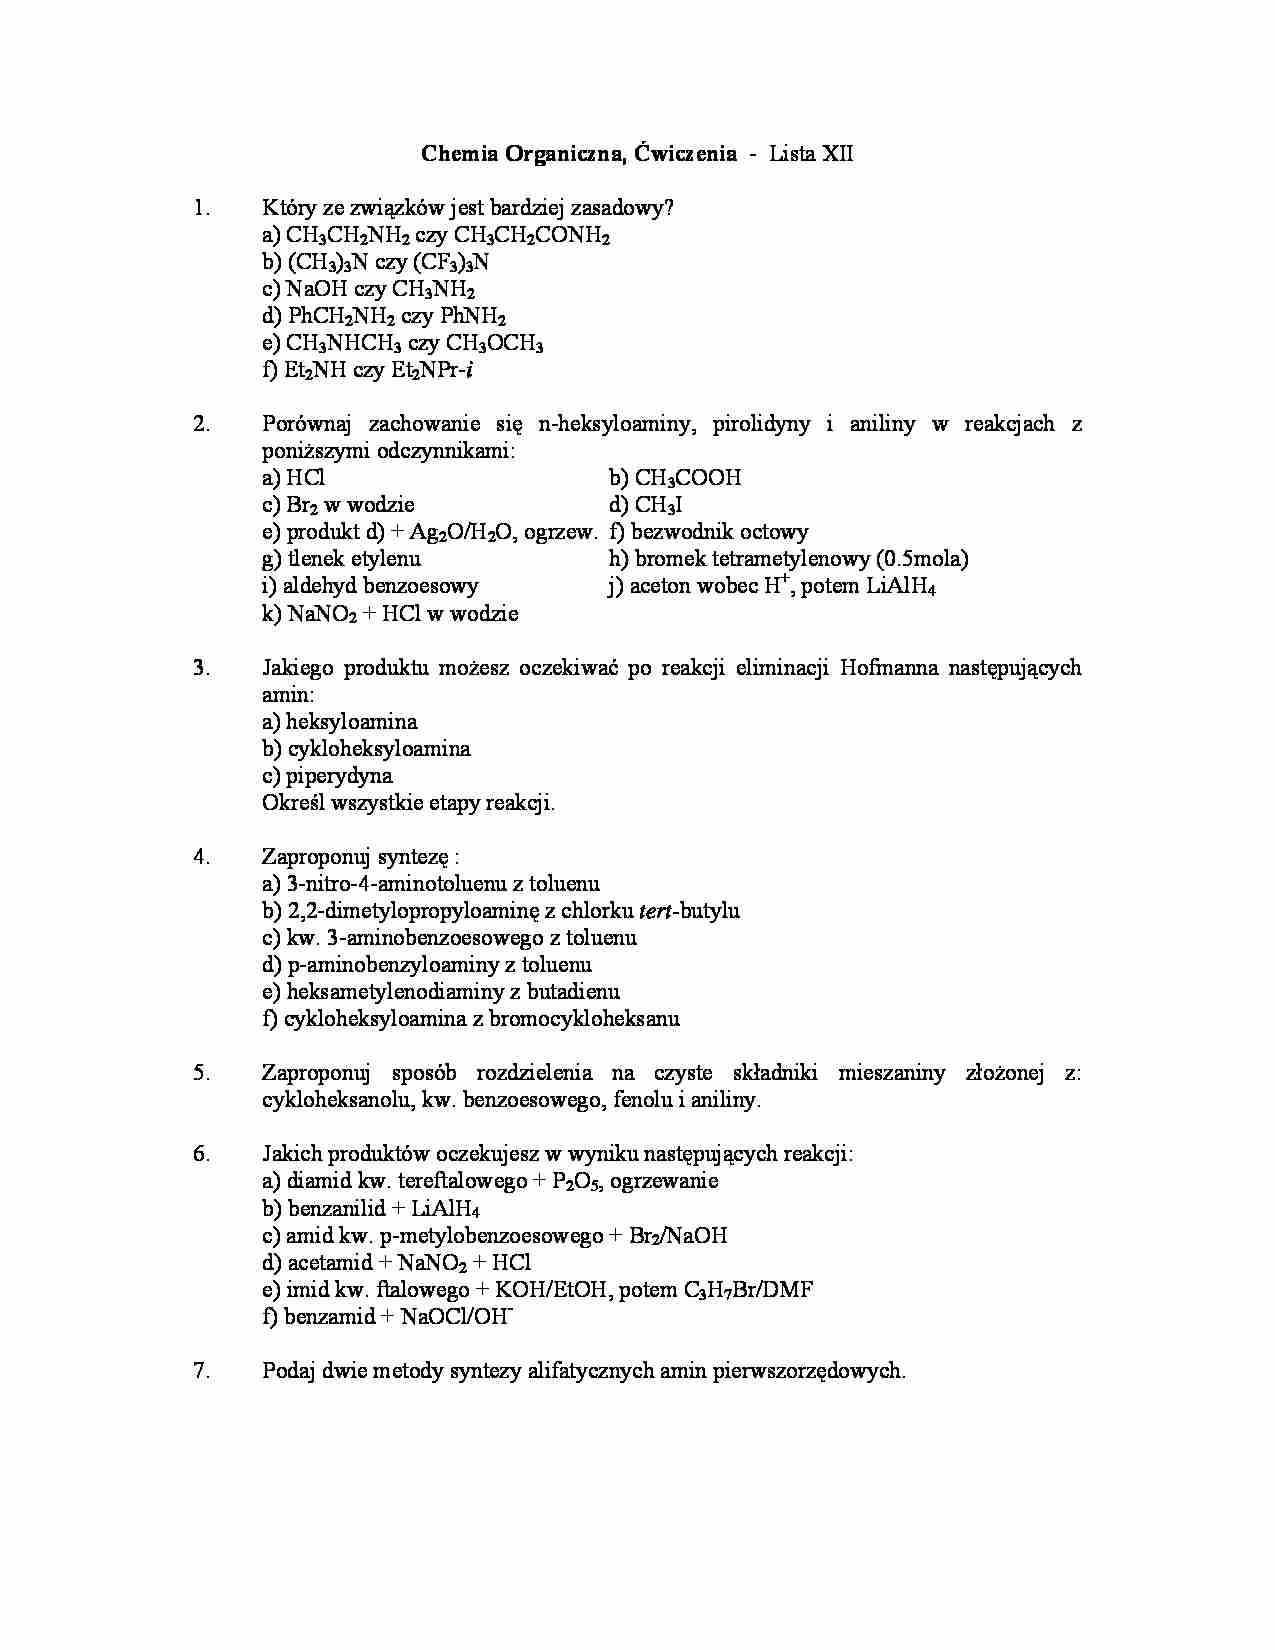 Chemia organiczna - ćwiczenia, lista XII - strona 1